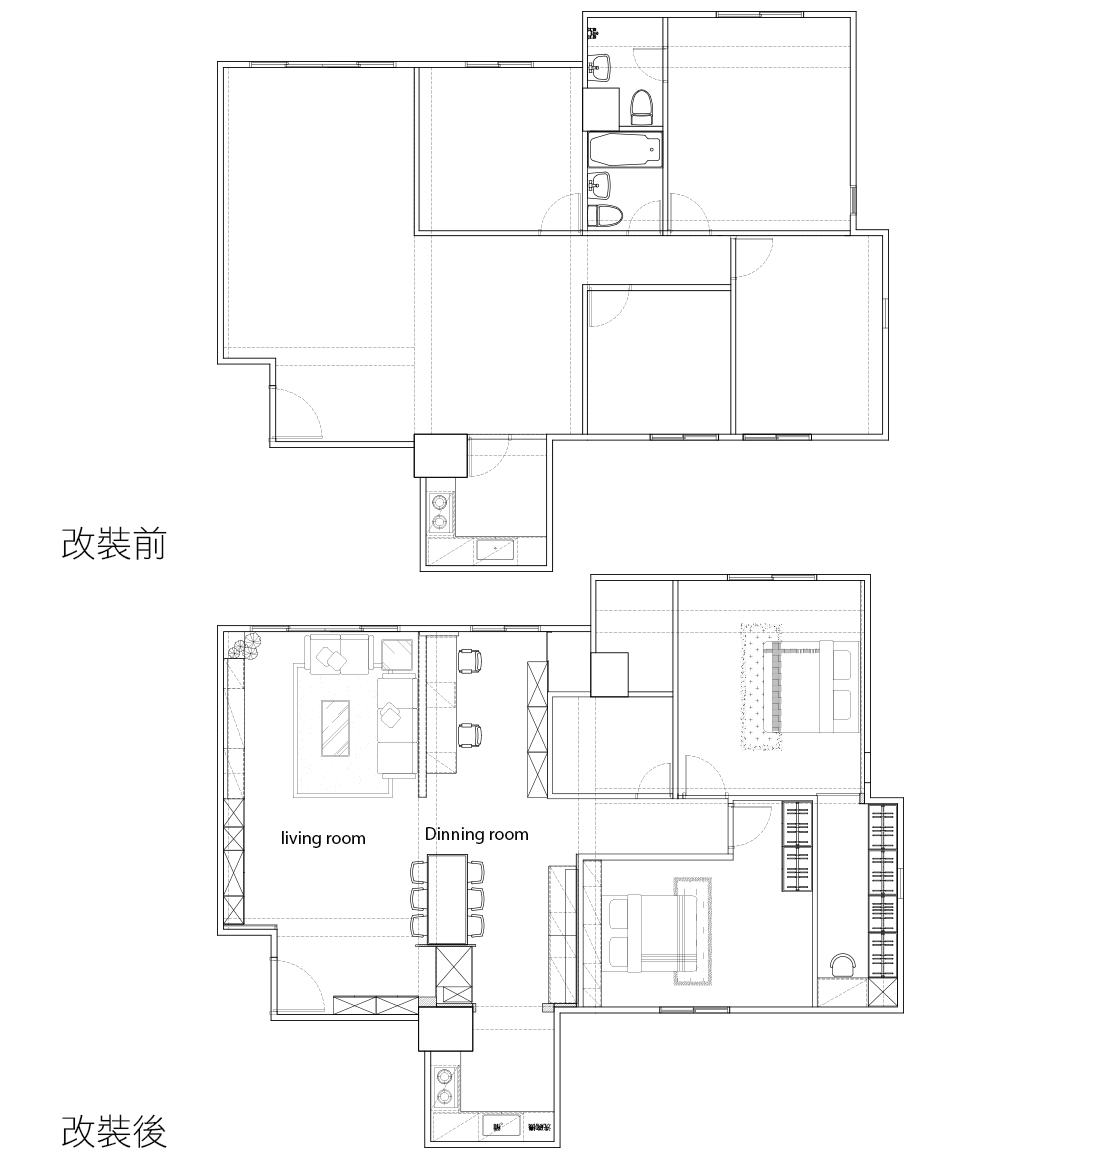 日式居家生活感之設計師的家